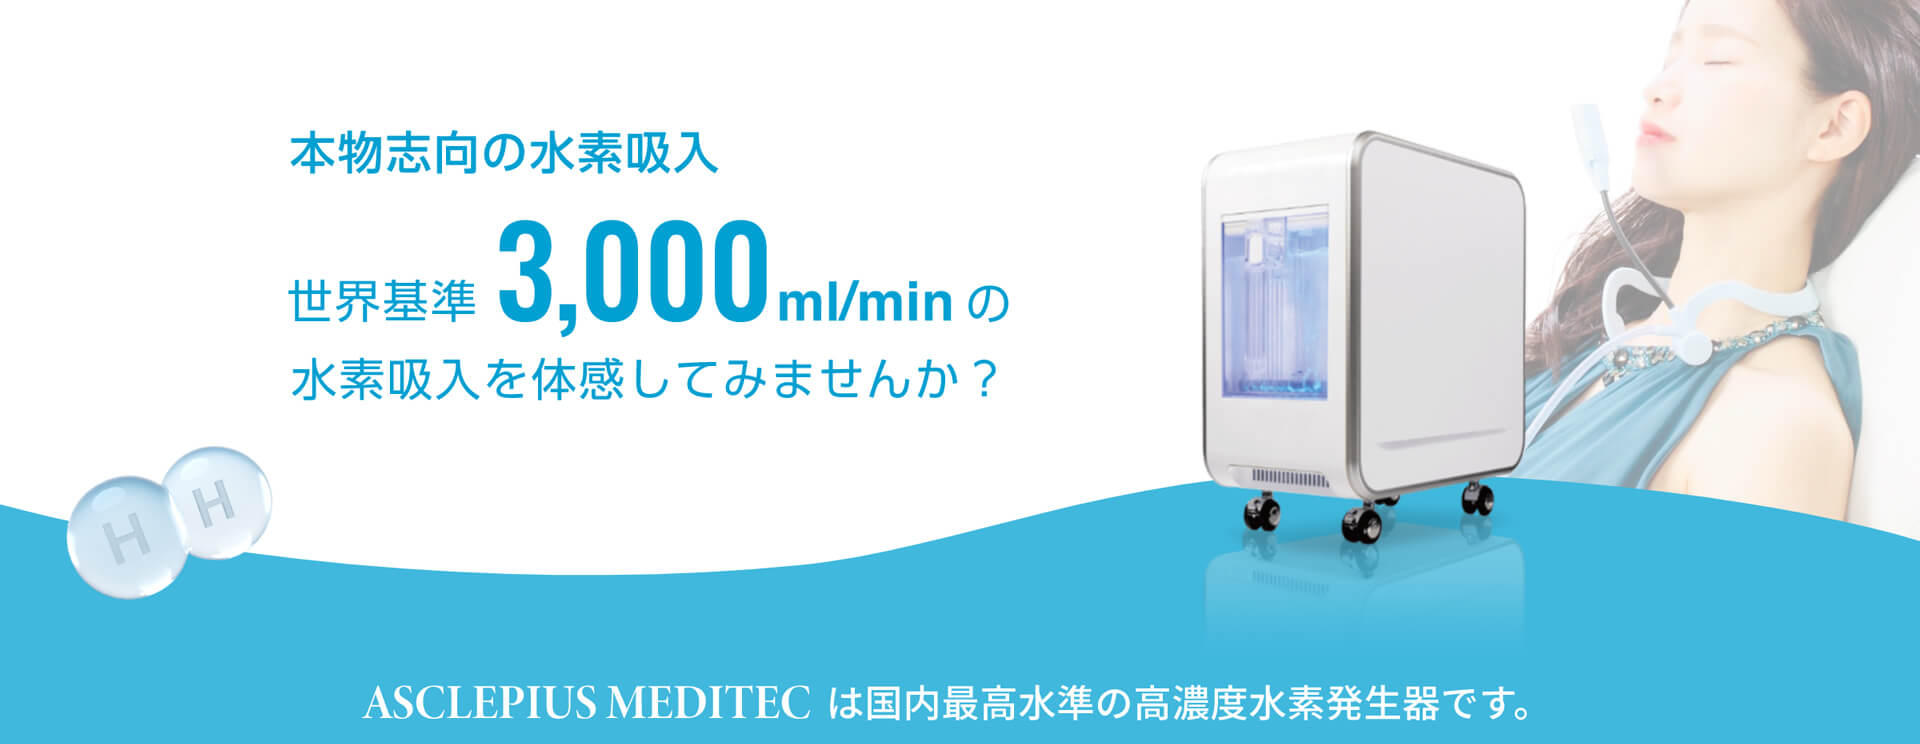 本物志向の水素吸入　世界基準3,000ml/minの水素吸入を体感してみませんか？ASCLEPIUS MEDITECは国内最高水準の高濃度水素発生器です。